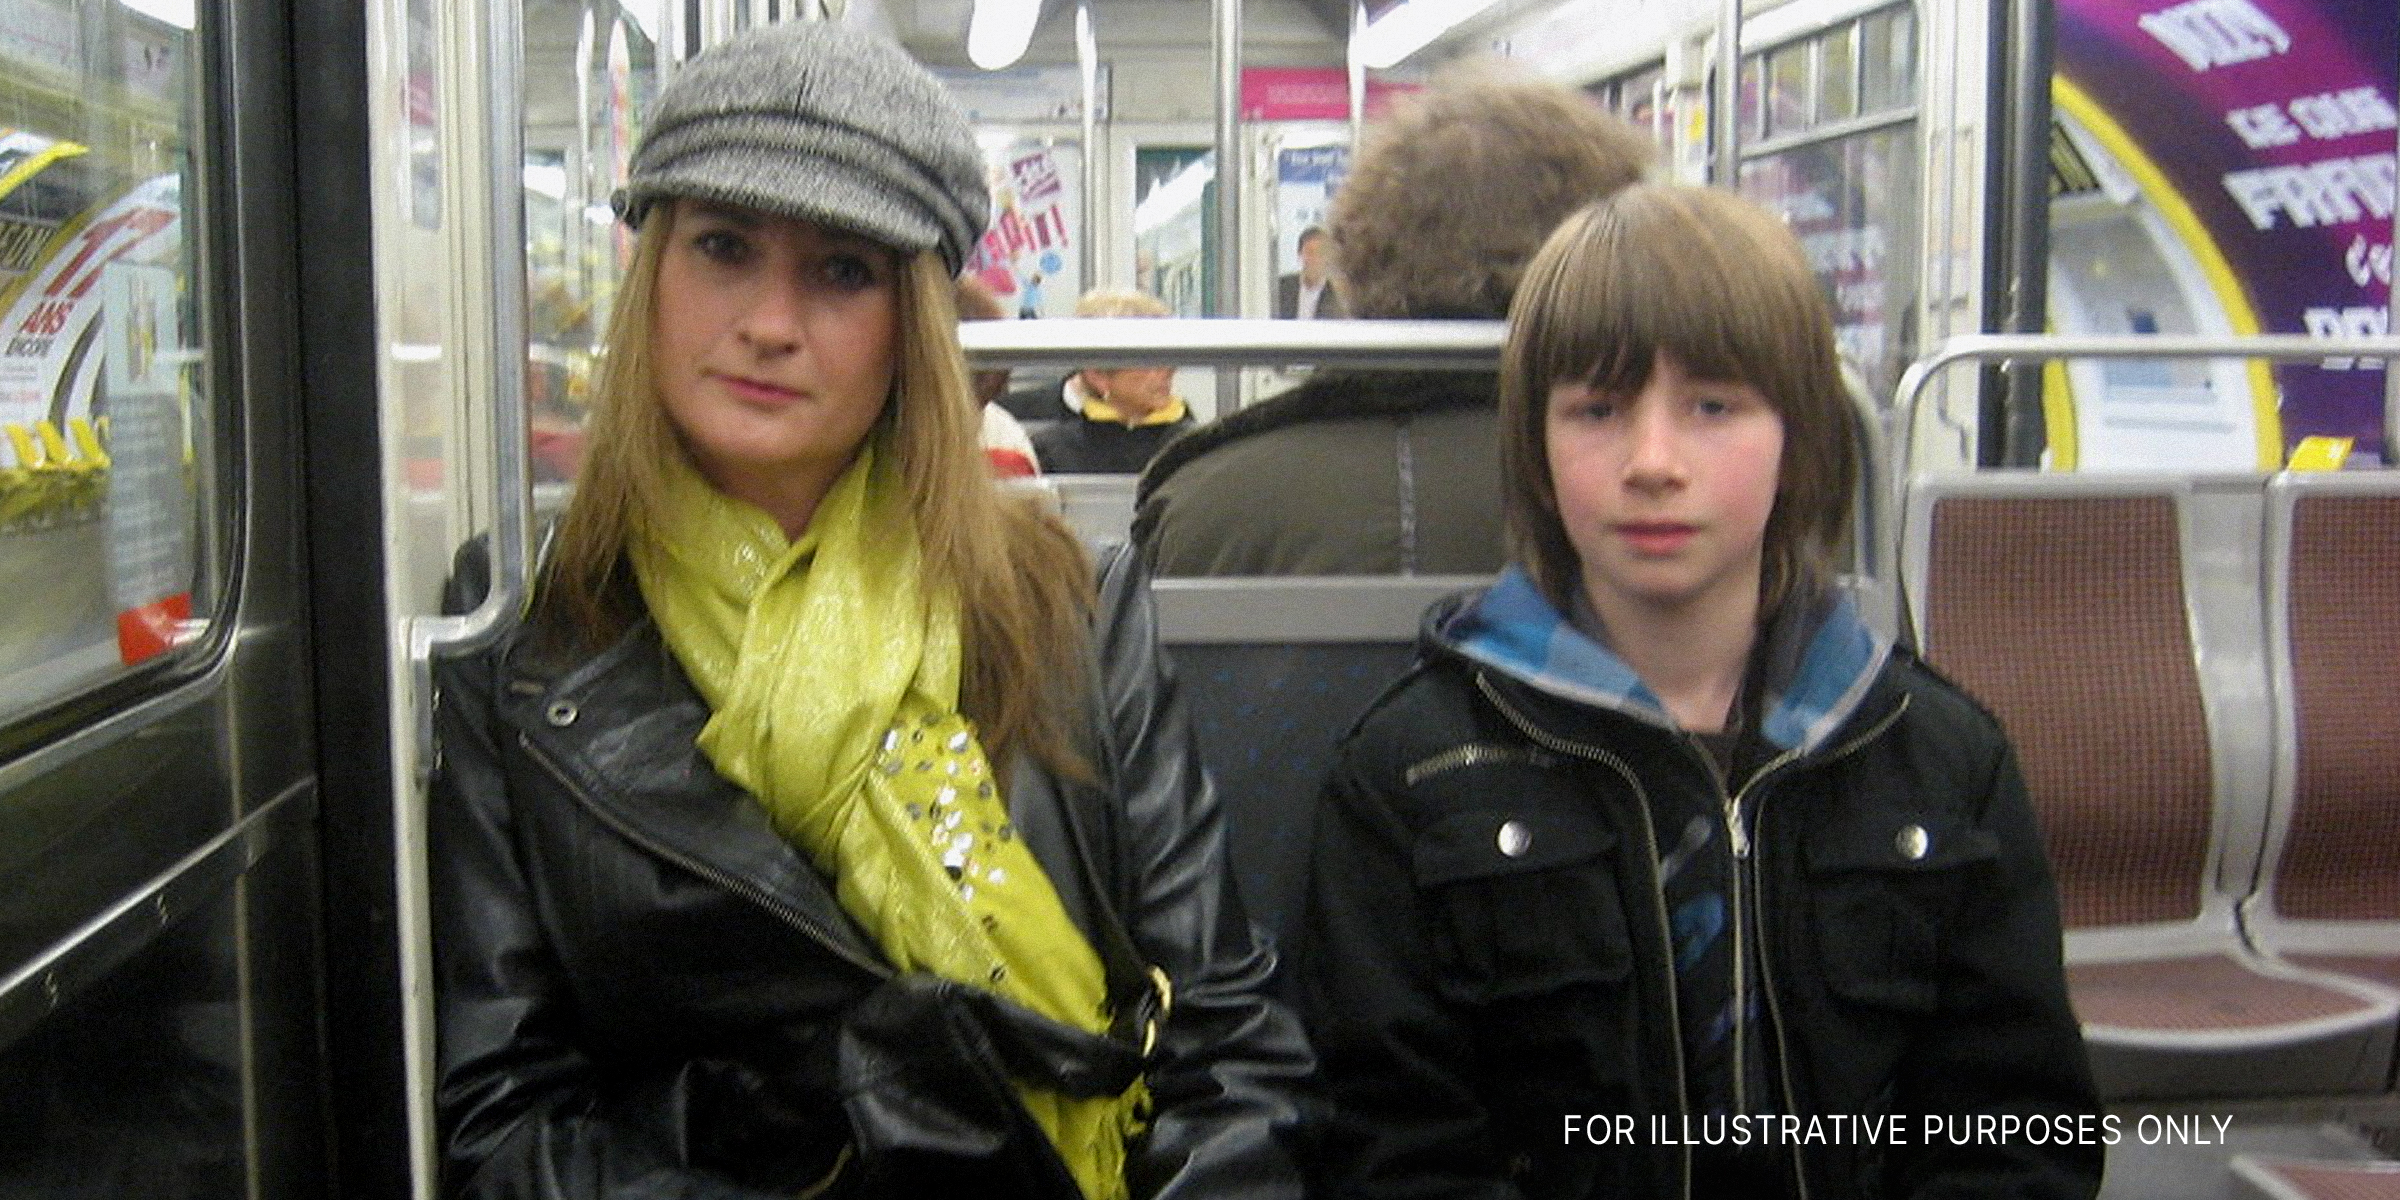 Eine Frau und ihr Sohn in einer U-Bahn | Quelle: Flickr/SteveR-/CC BY 2.0